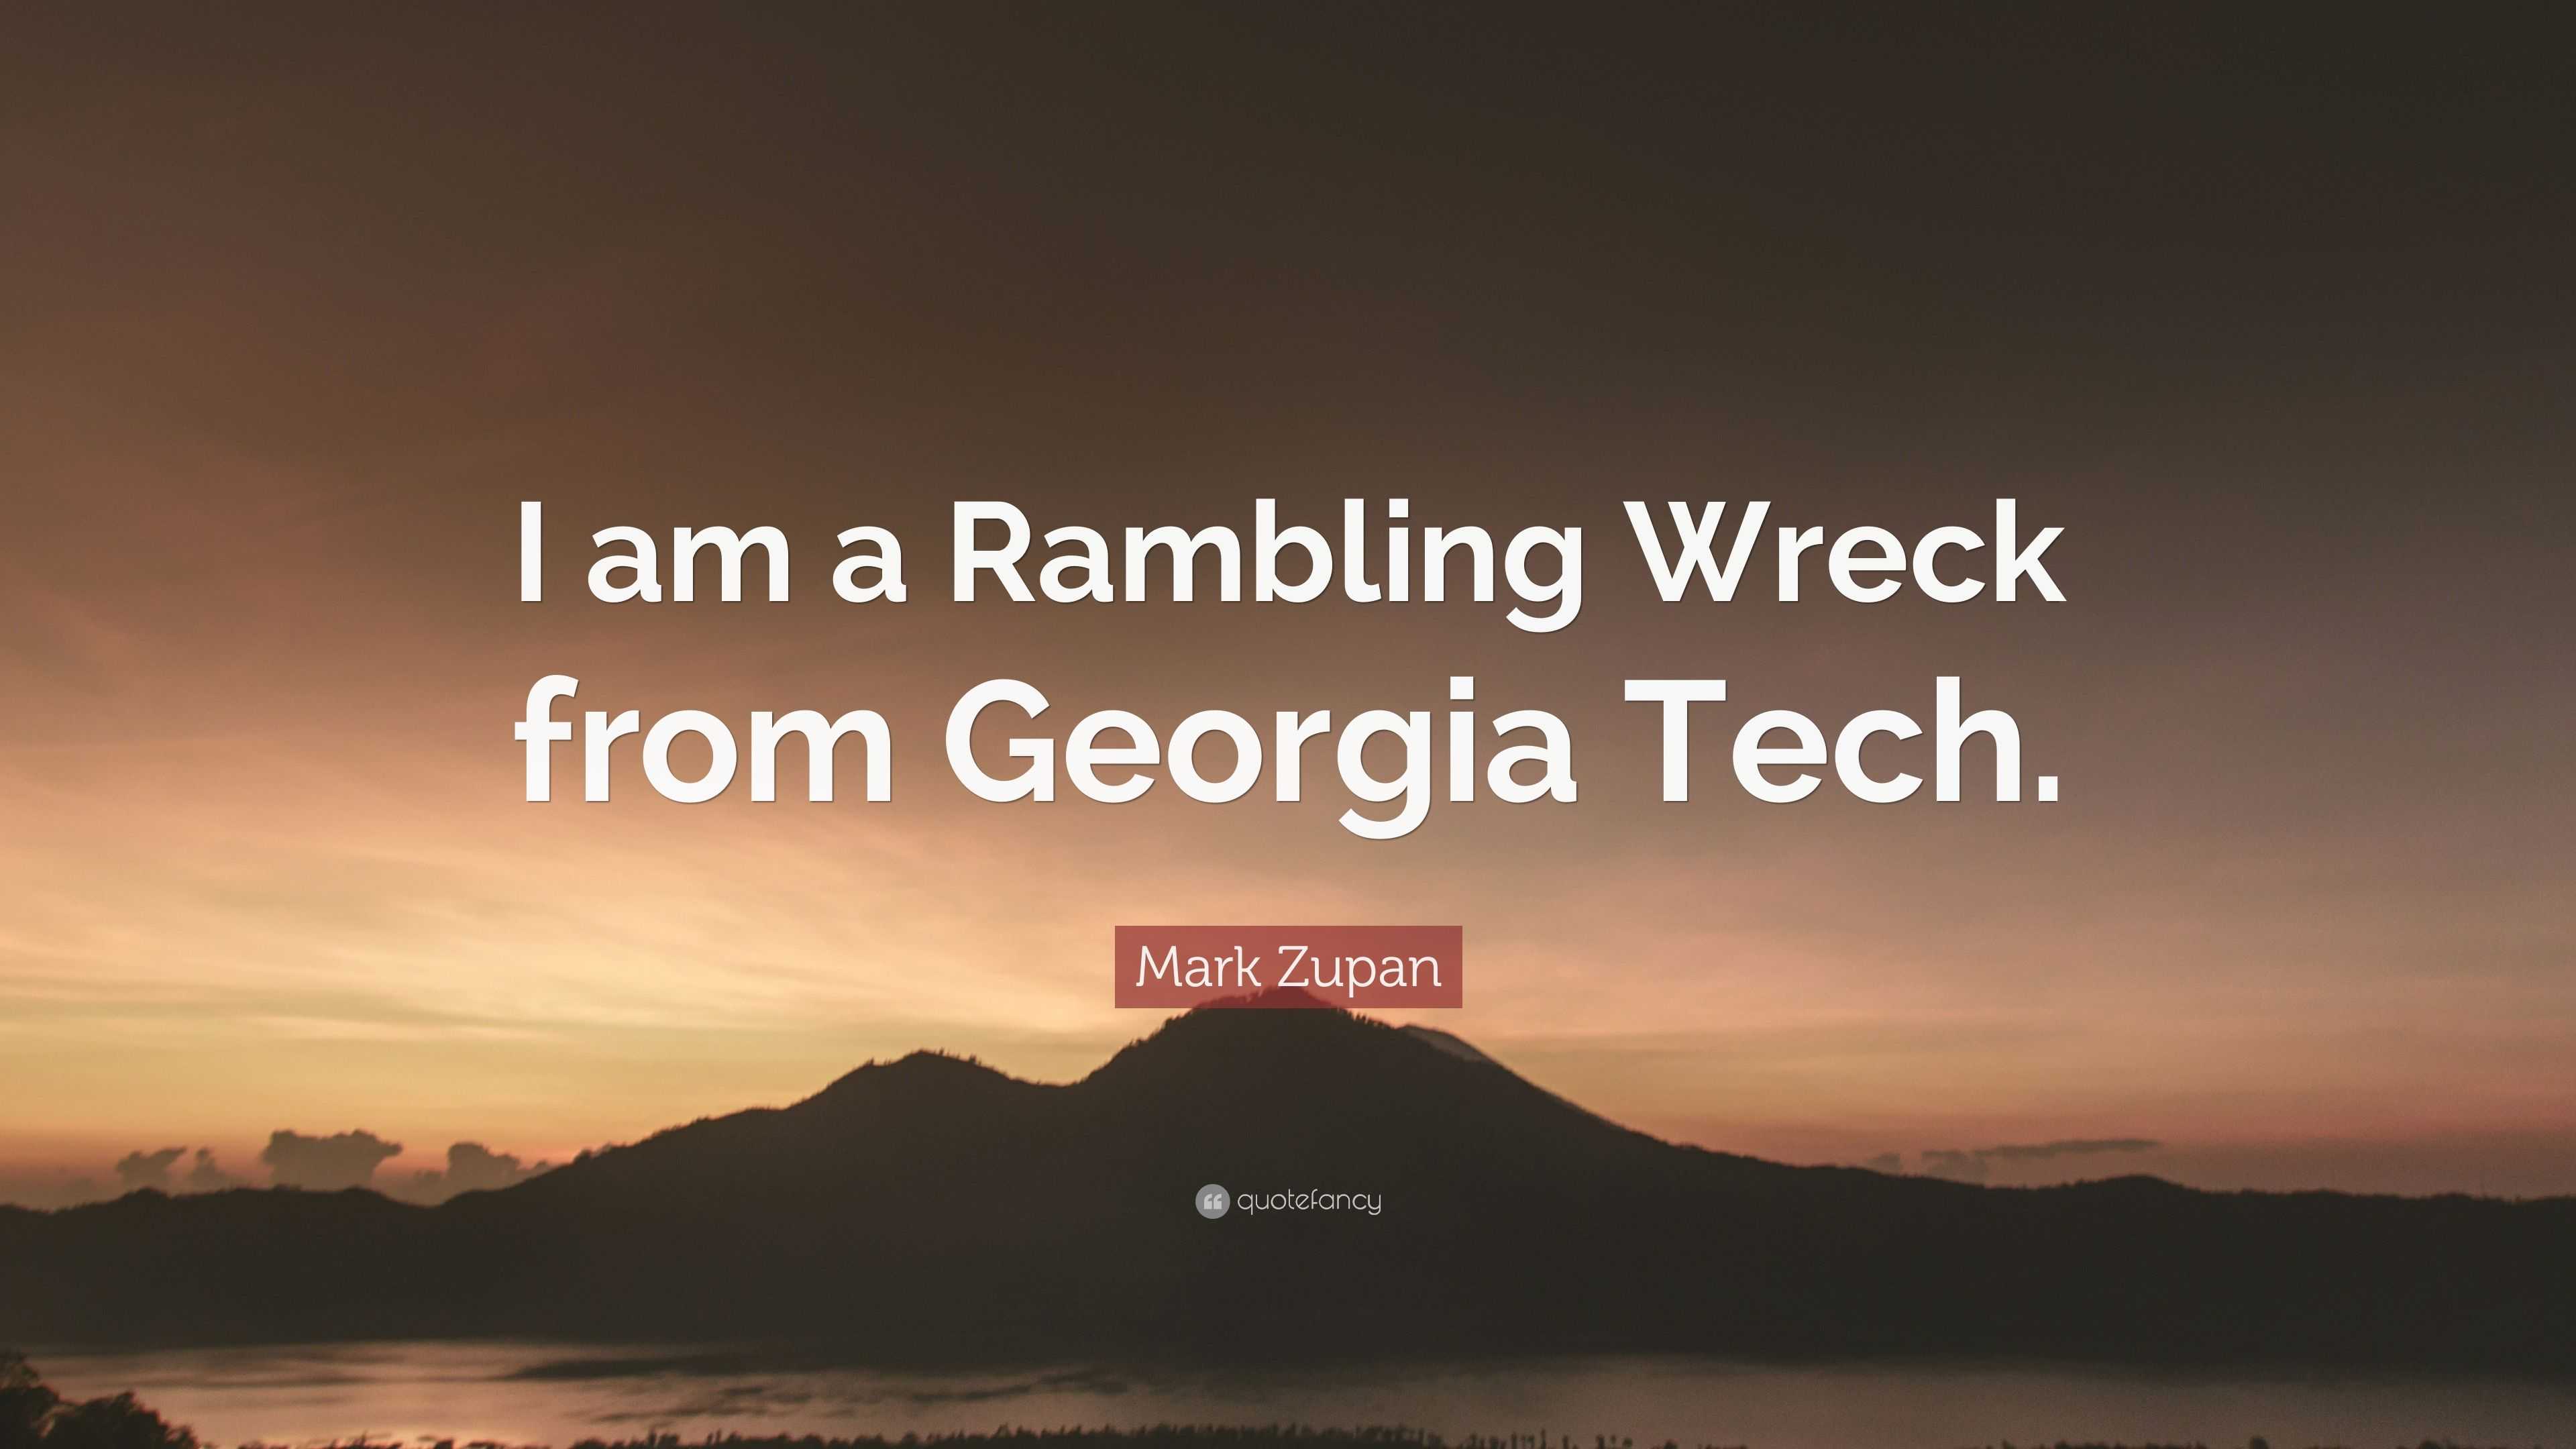 I am a Rambling Wreck from Georgia Tech